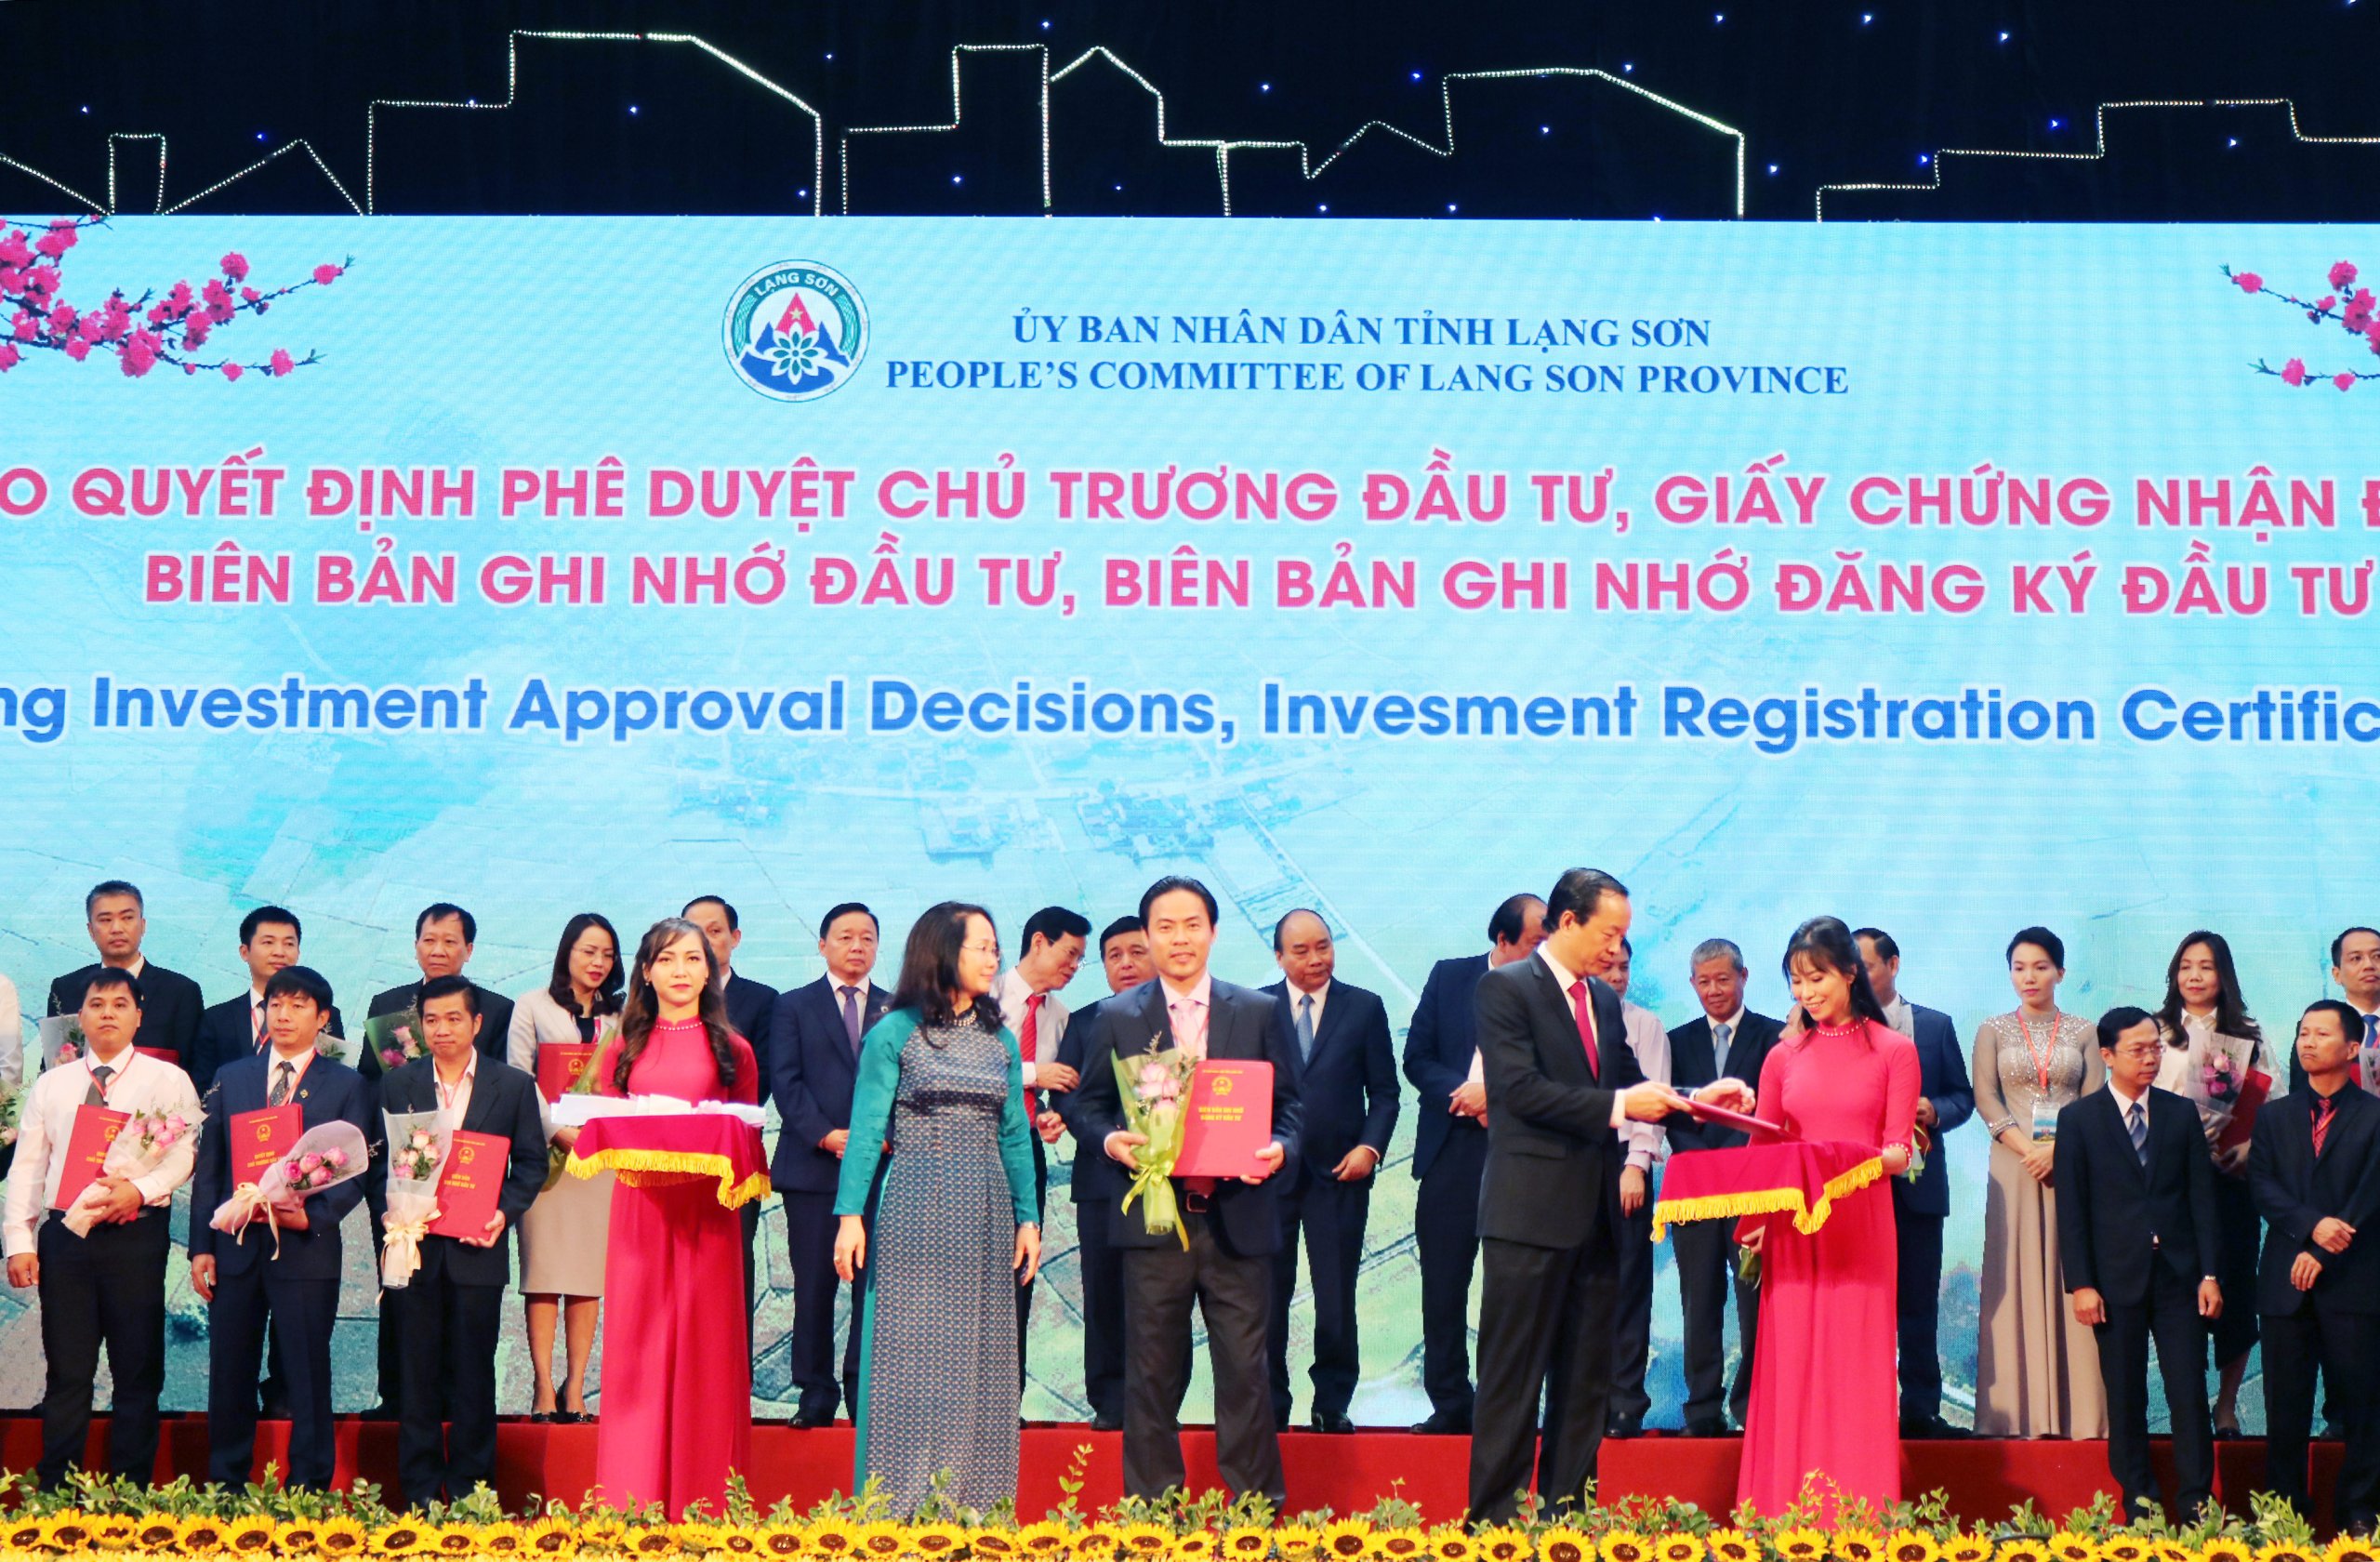 Tập đoàn Kosy nhận chứng nhận đăng ký đầu tư dự án 1.500 tỷ tại tỉnh Lạng Sơn